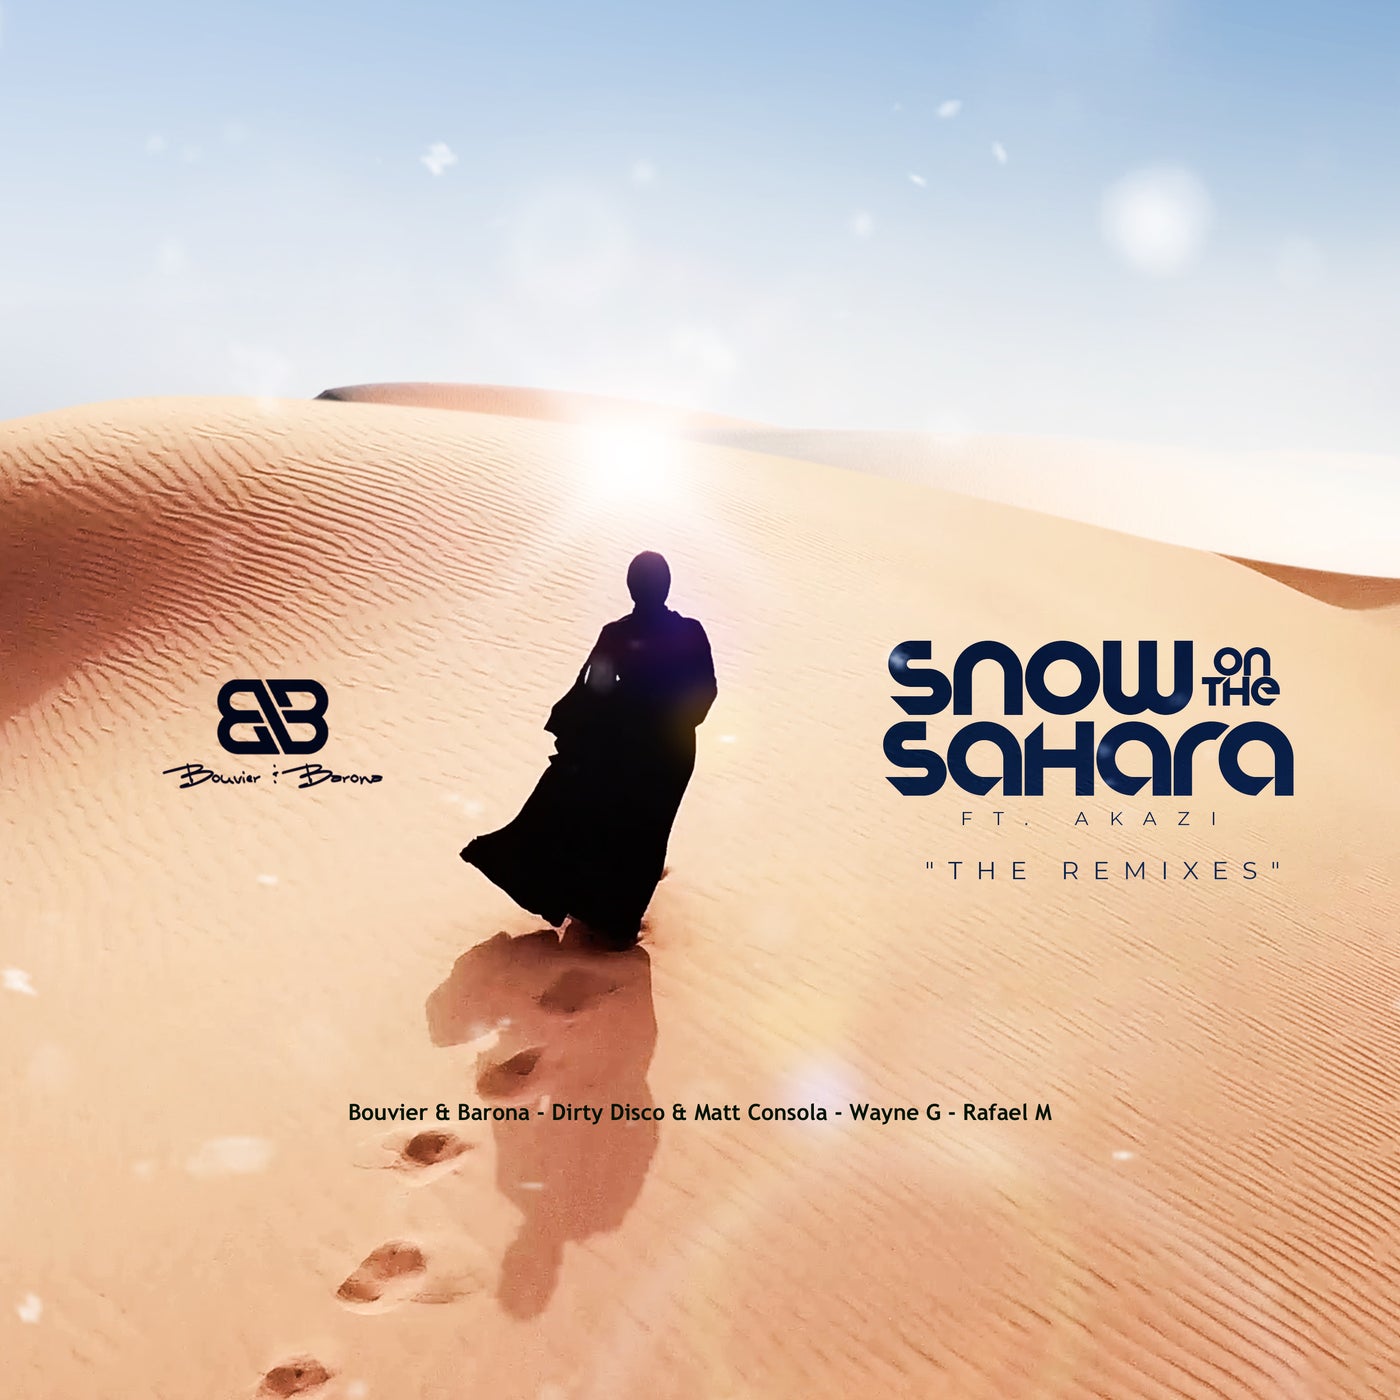 Snow on the Sahara (The Remixes Vol 1)